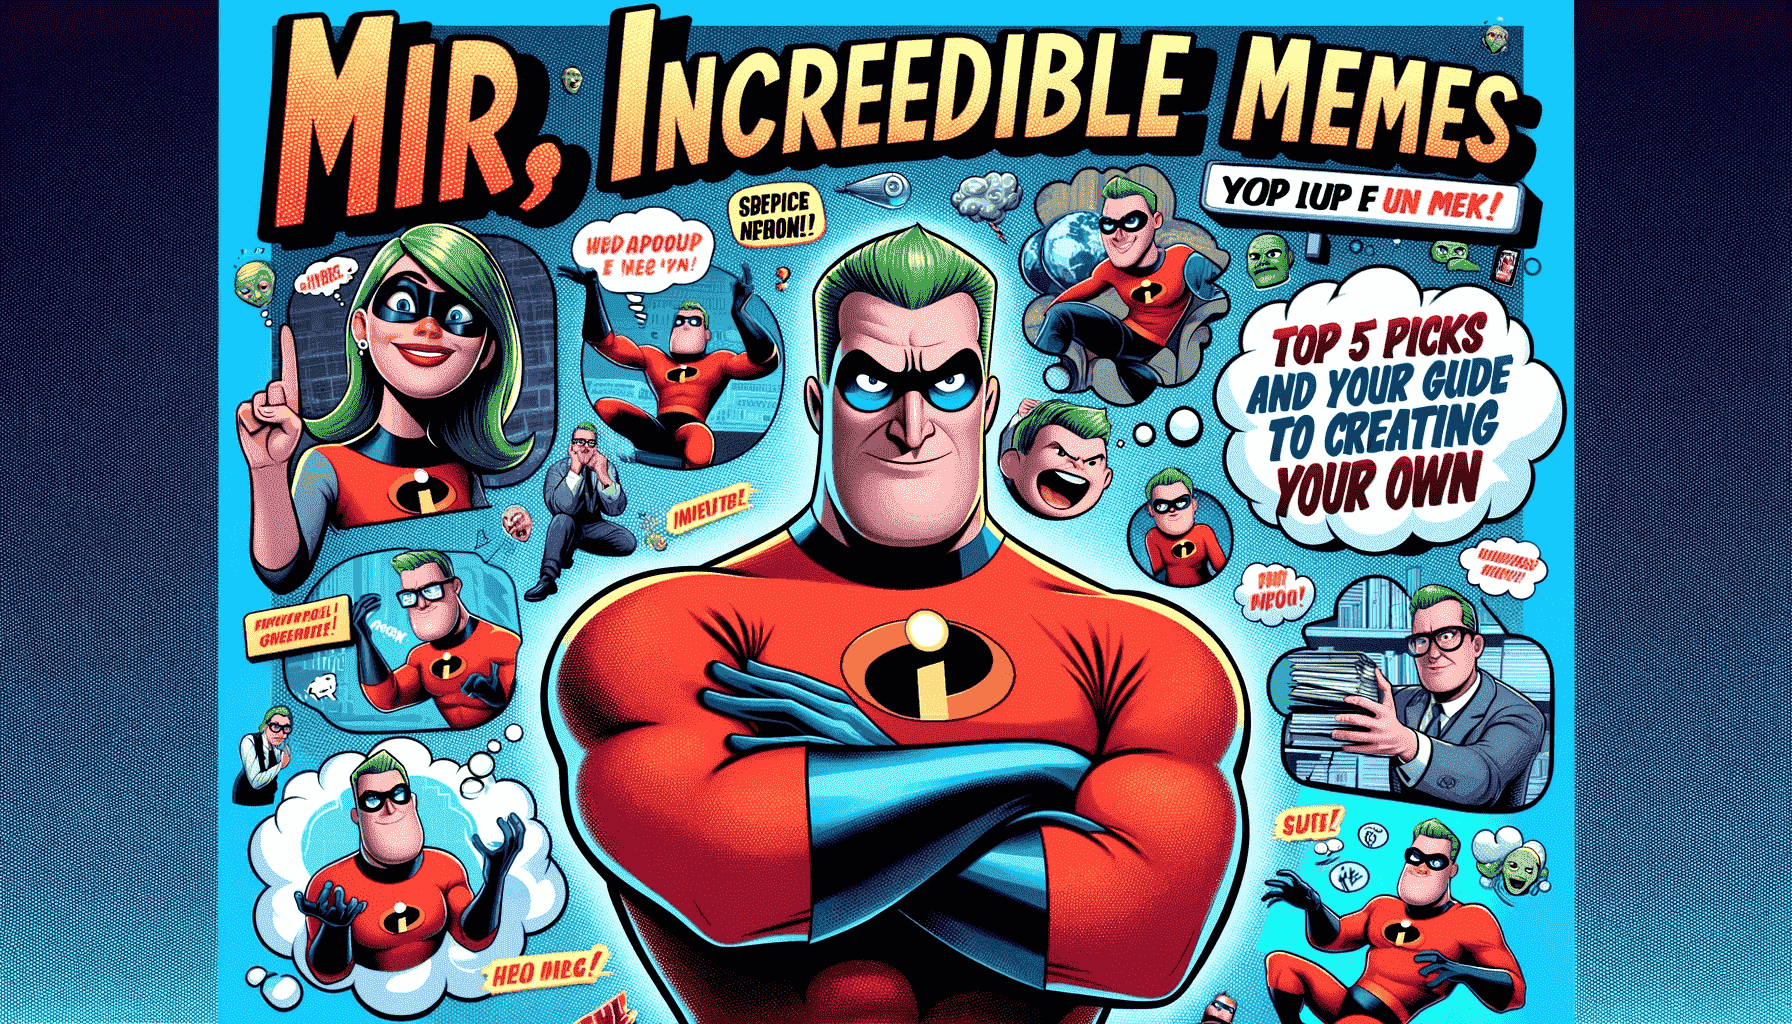 Mr Incredible memes Comic Studio - make comics & memes with Mr